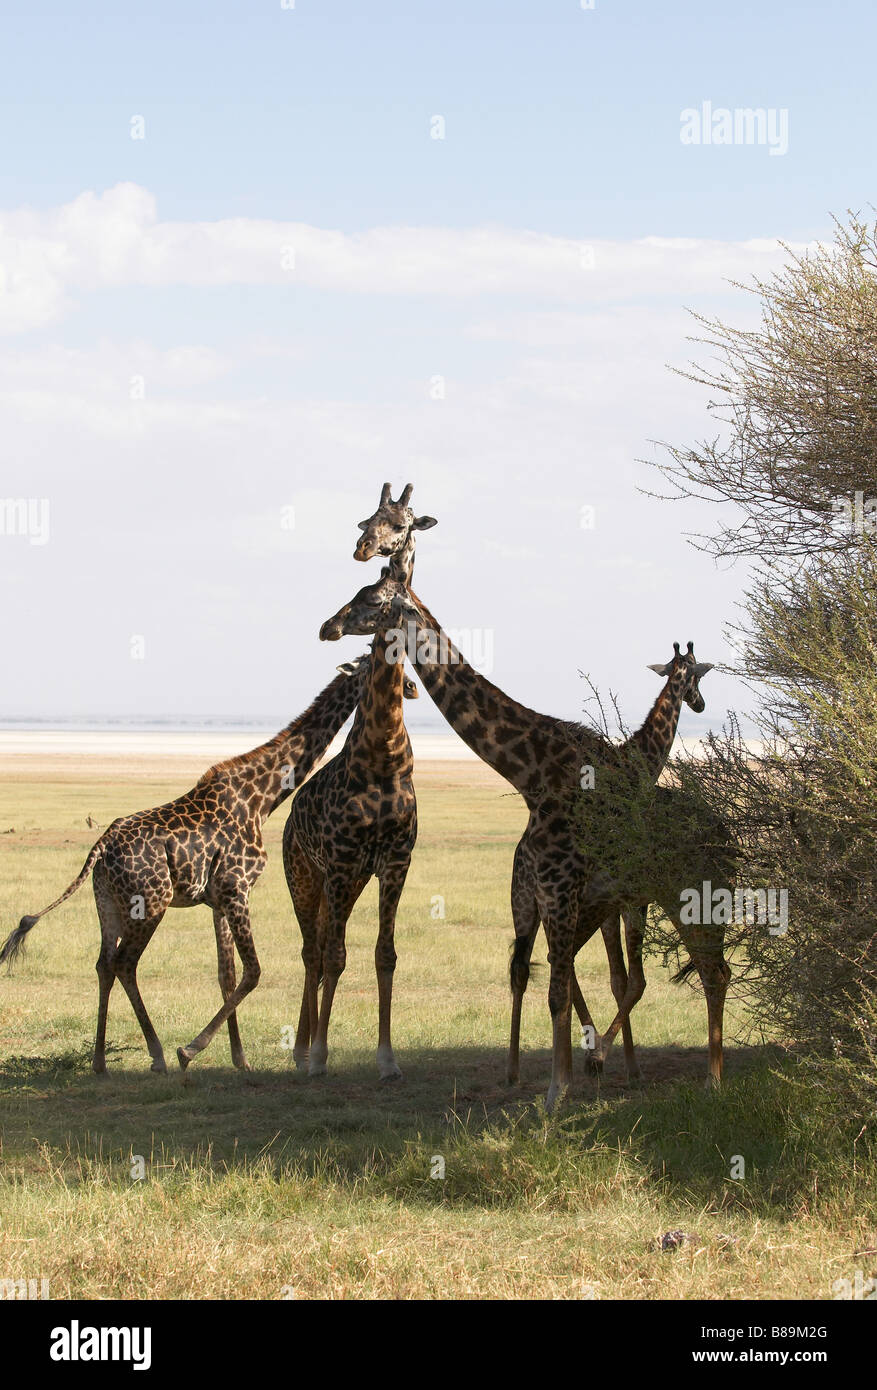 Girafe mammifère d'Afrique la plus haute de toutes les espèces animales vivantes et le plus grand ruminant Banque D'Images